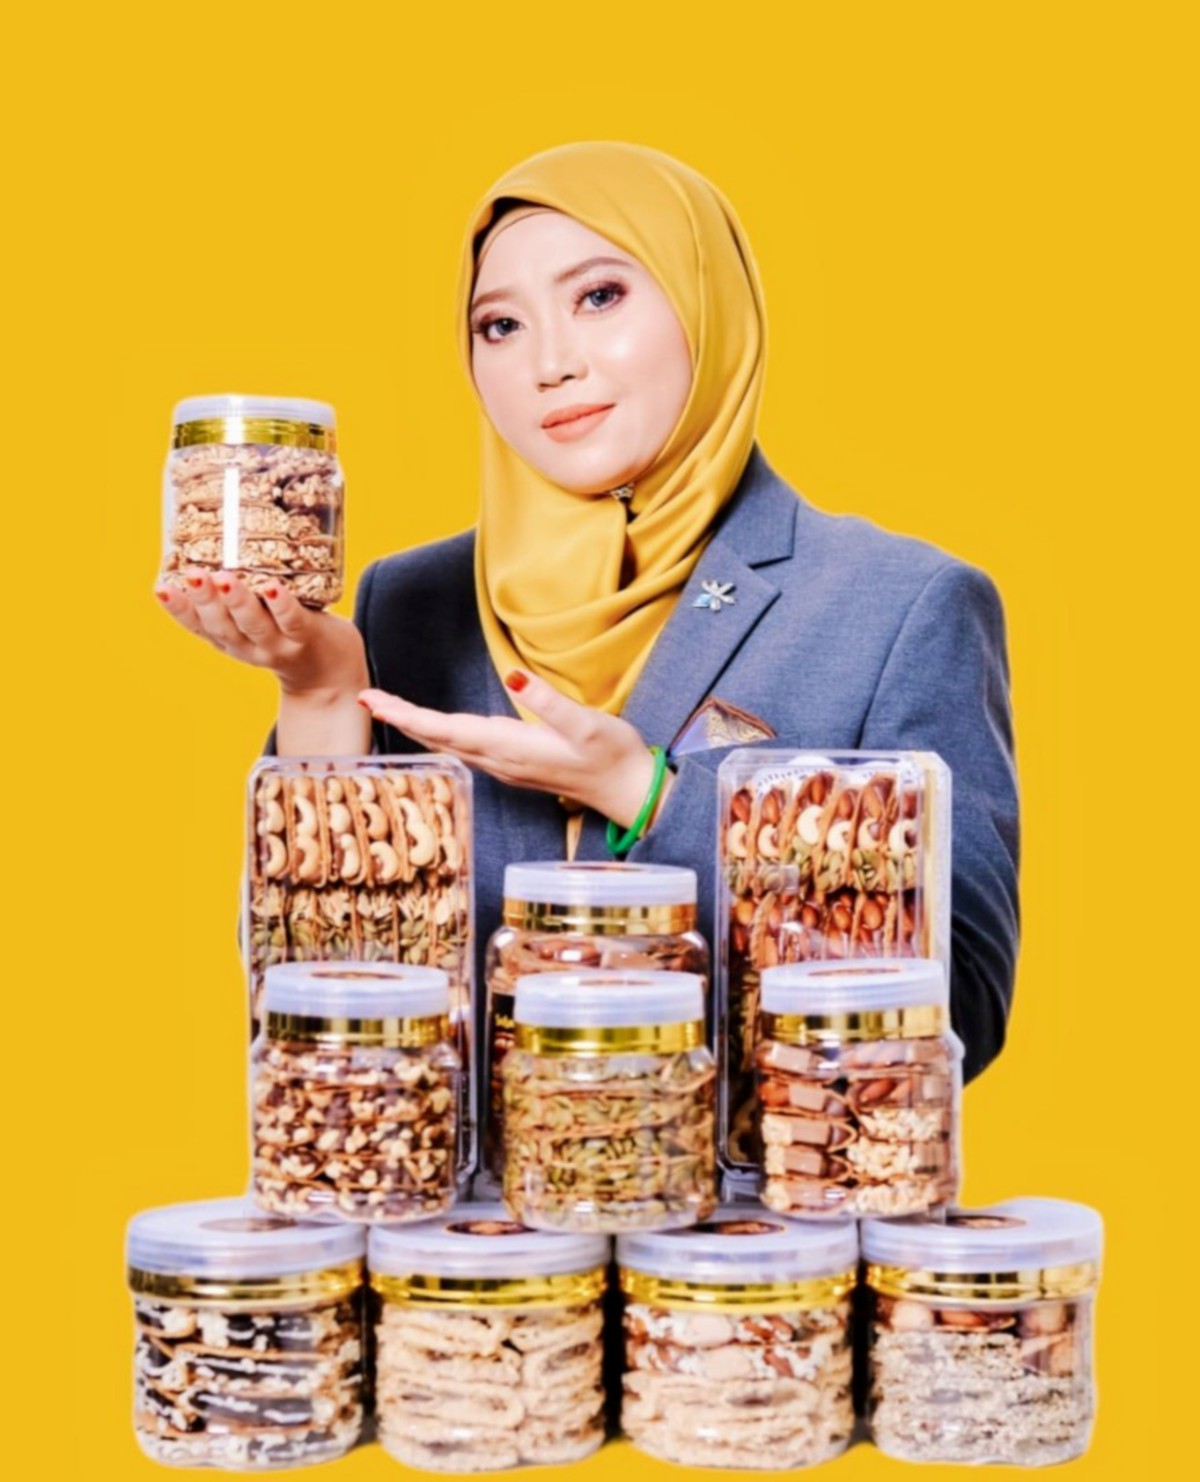 NOORHAYU bersama rangkaian produk Kapit Premium by Salsabillah.